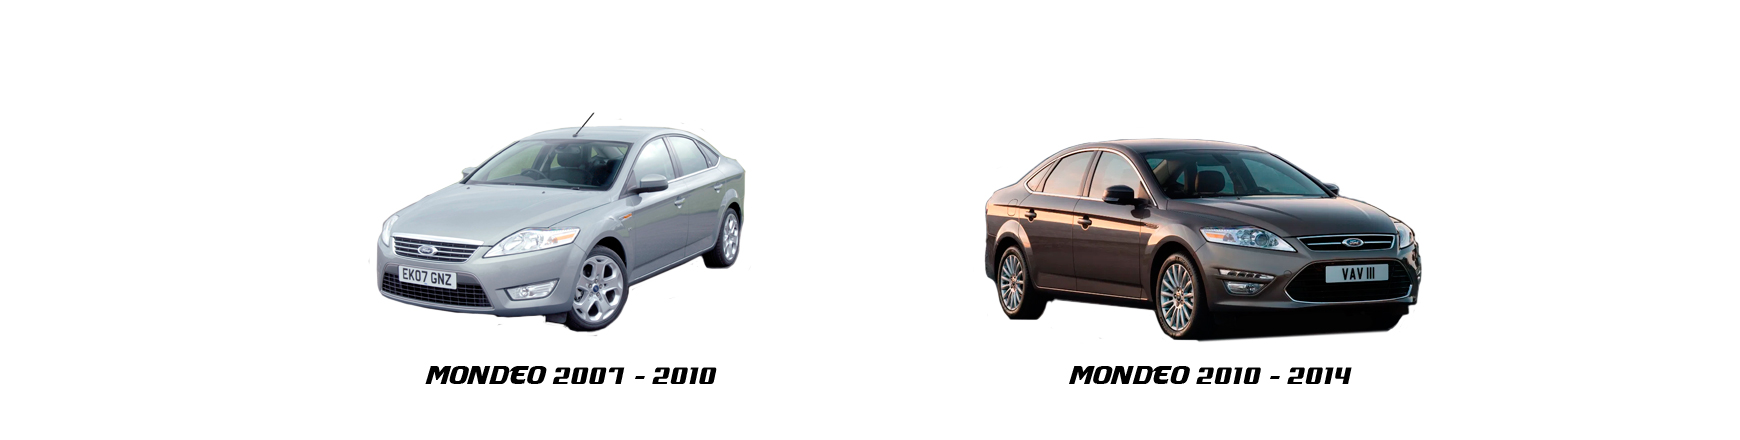 Recambios de Ford Mondeo de 2007, 2008, 2009, 2010 y 2011 con envío